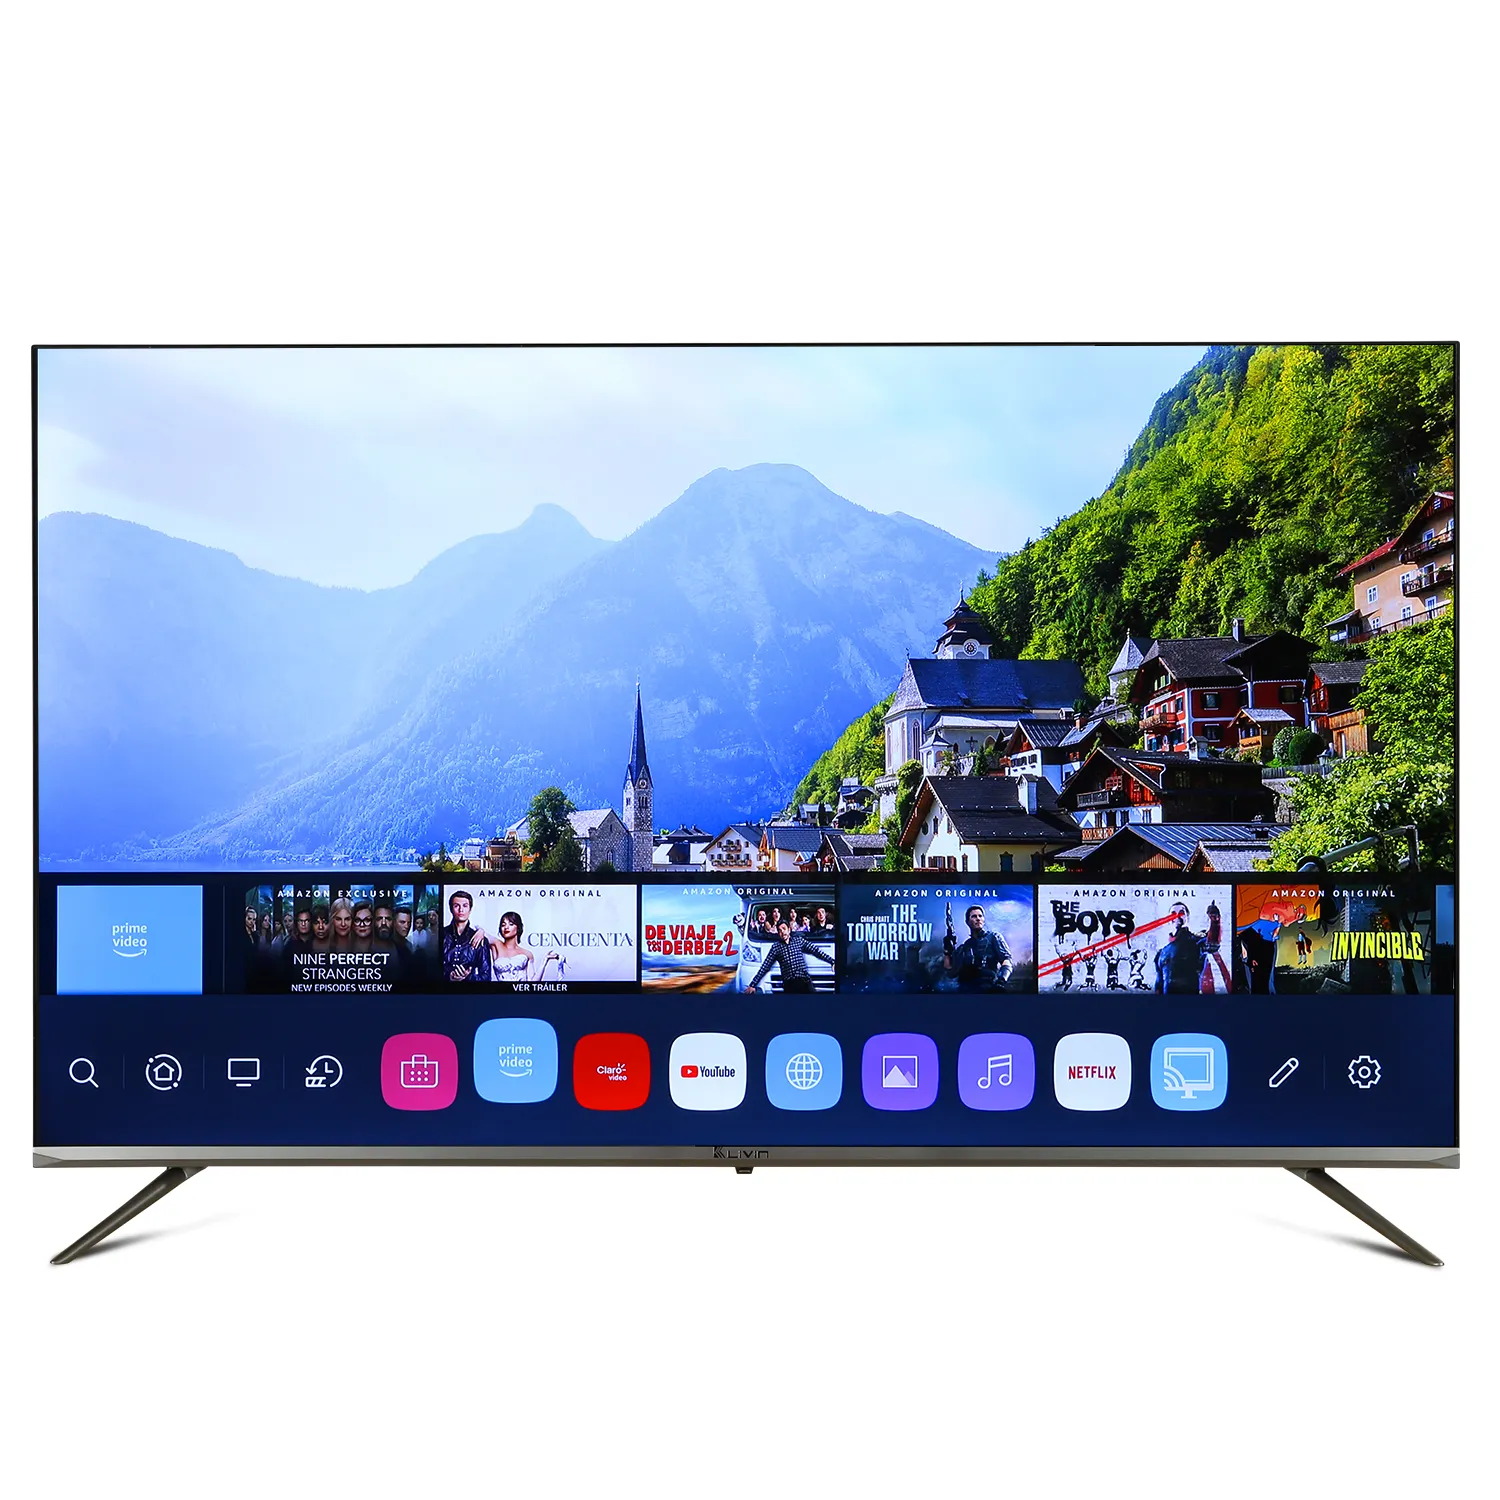 Launch-televisor inteligente 4K, compatible con Bluetooth, 50, 55, 58, 65, 75 pulgadas